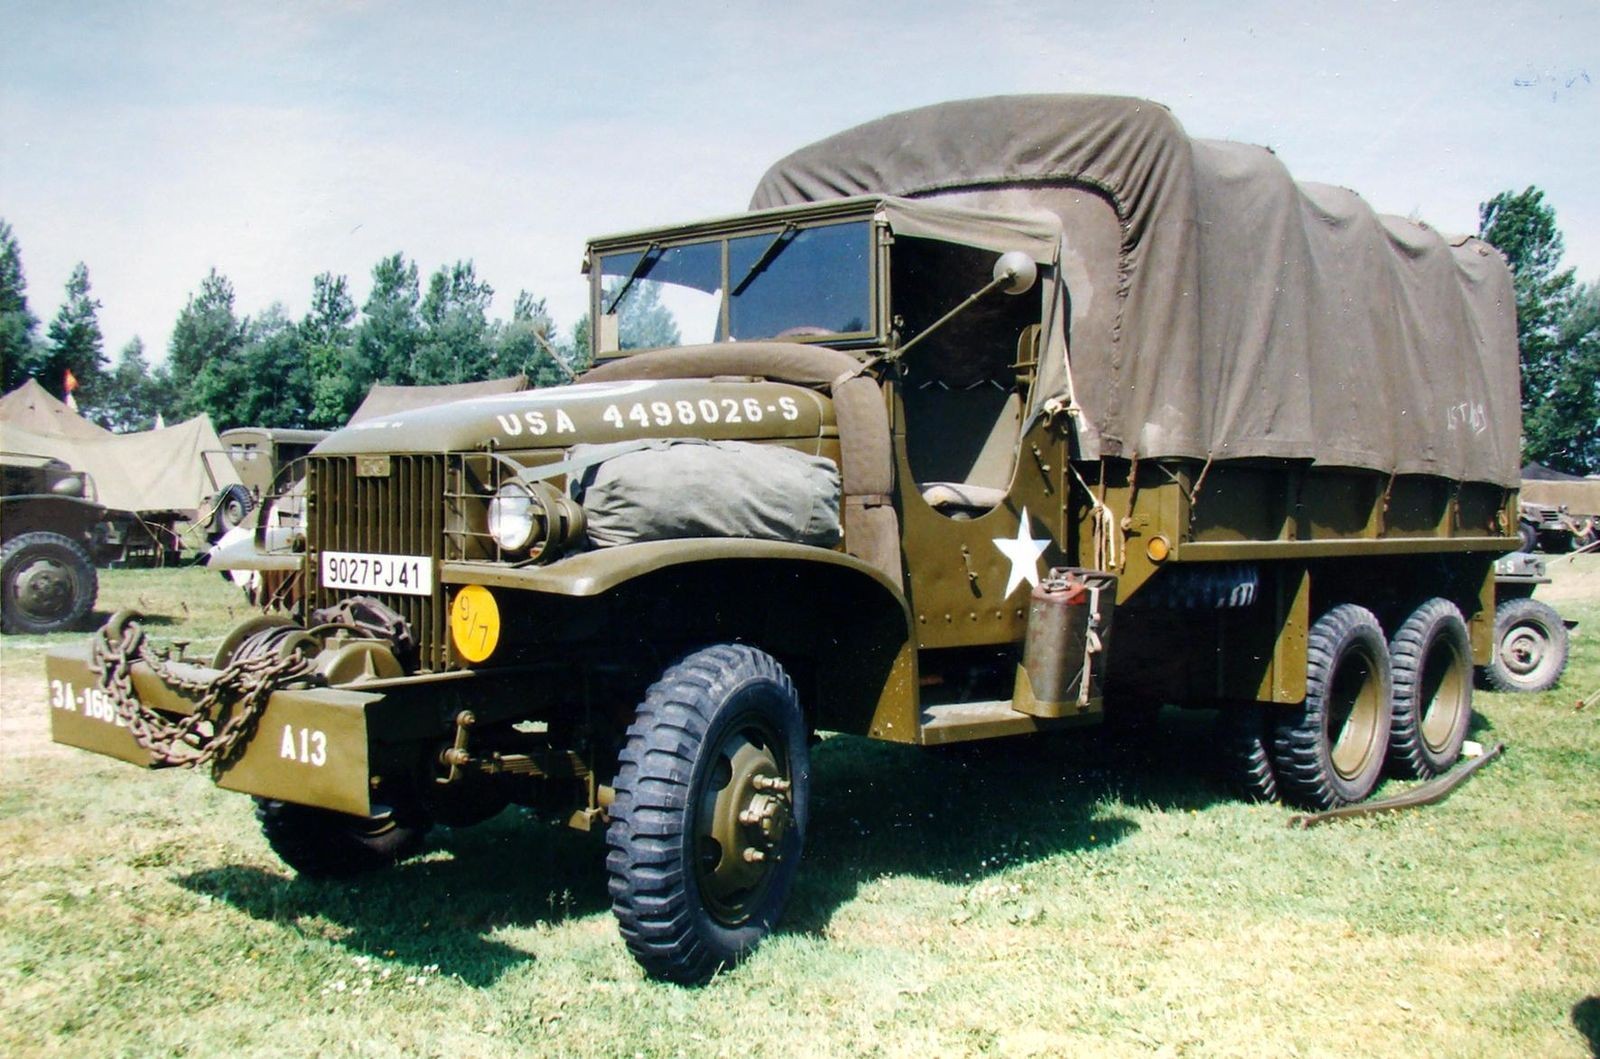 Неизвестный ленд-лиз: Chevrolet G4100, GMC CCKW и International М-5-6 в Красной армии